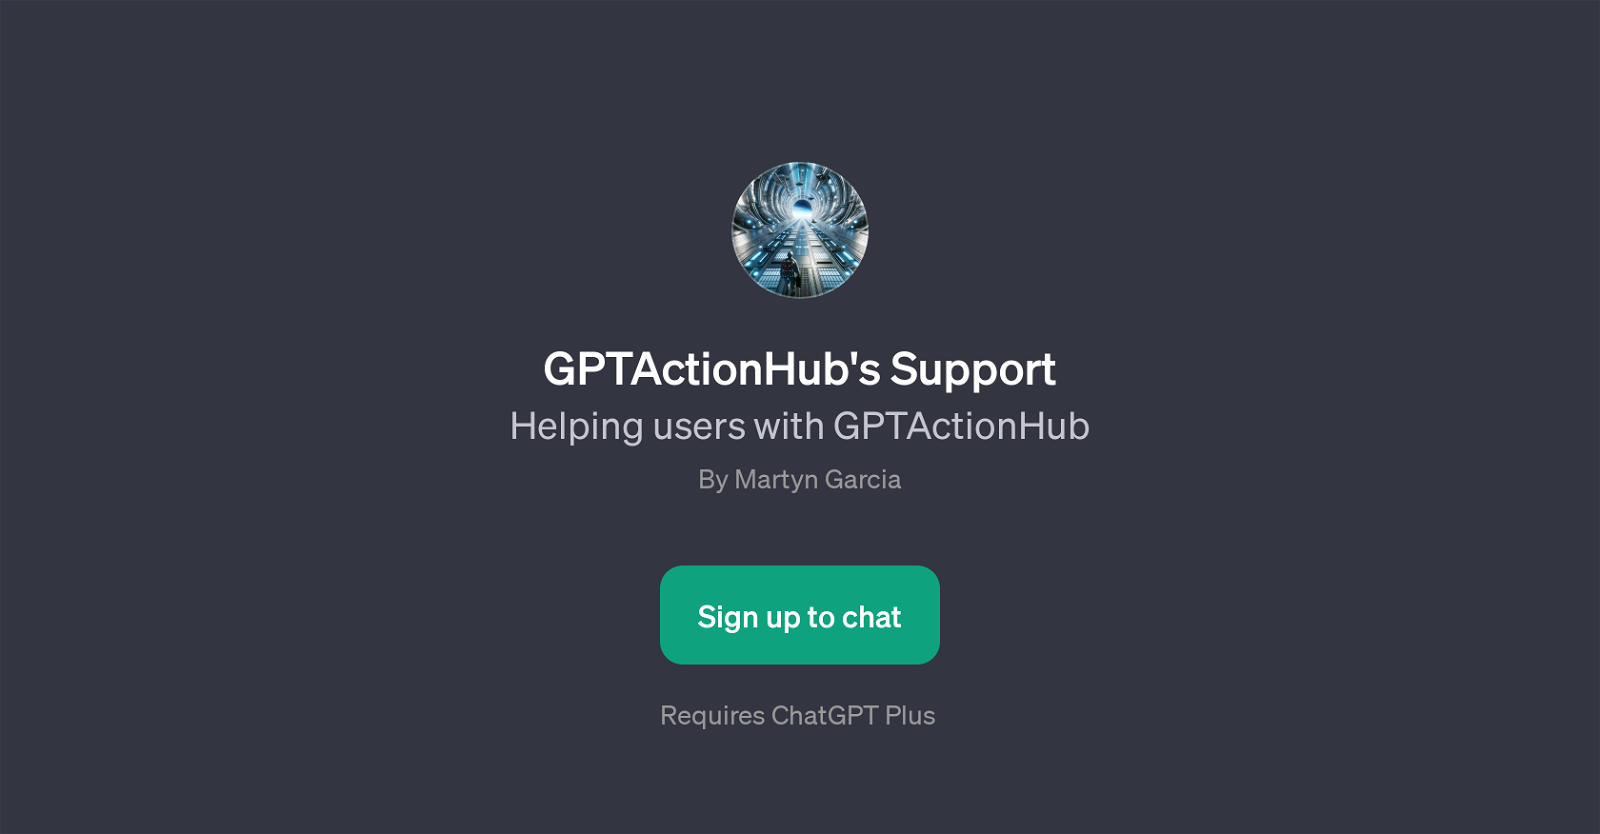 GPTActionHub's Support website